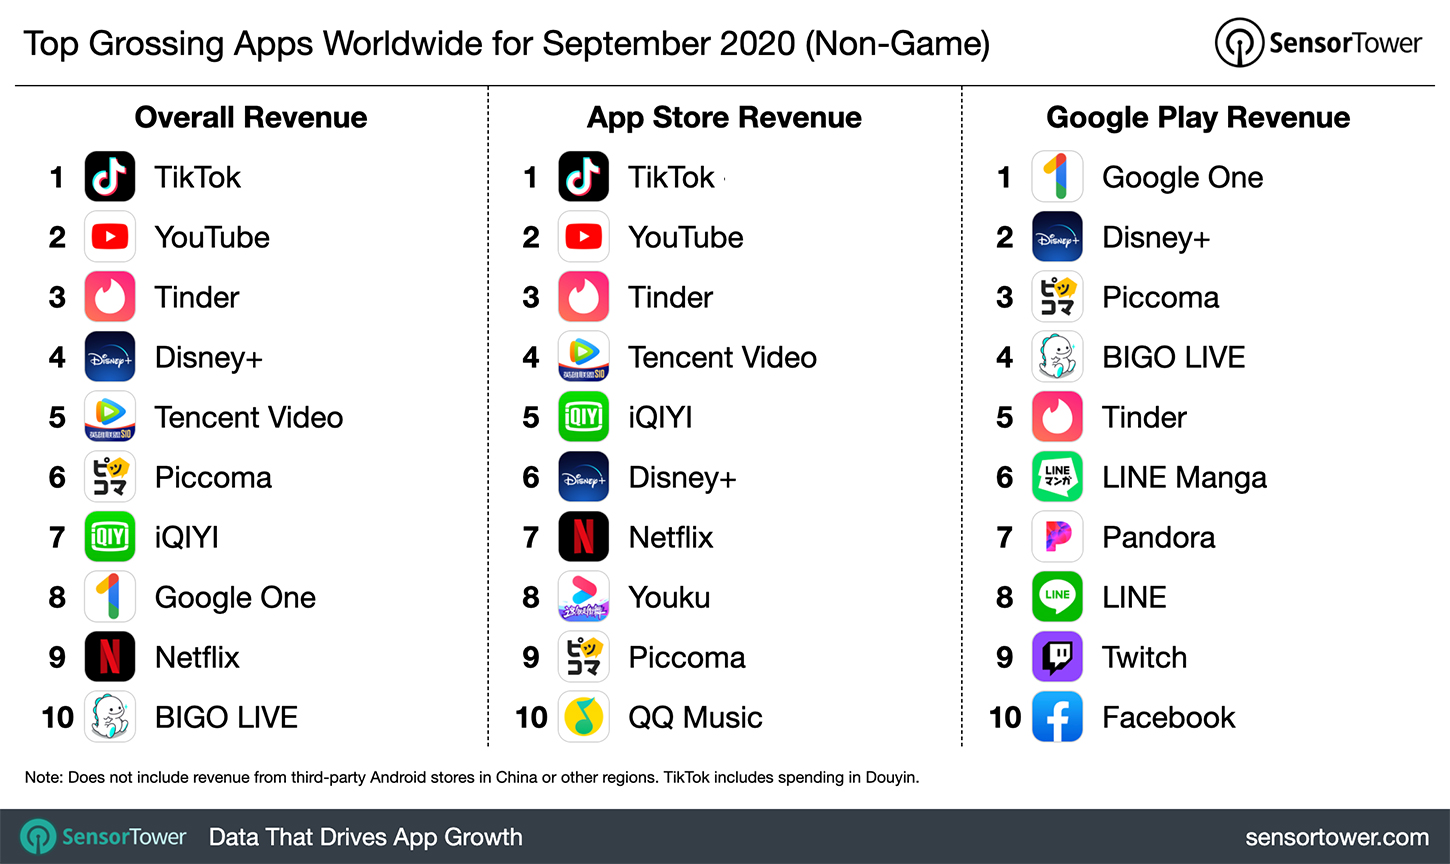 “Top Grossing Apps Worldwide for September 2020